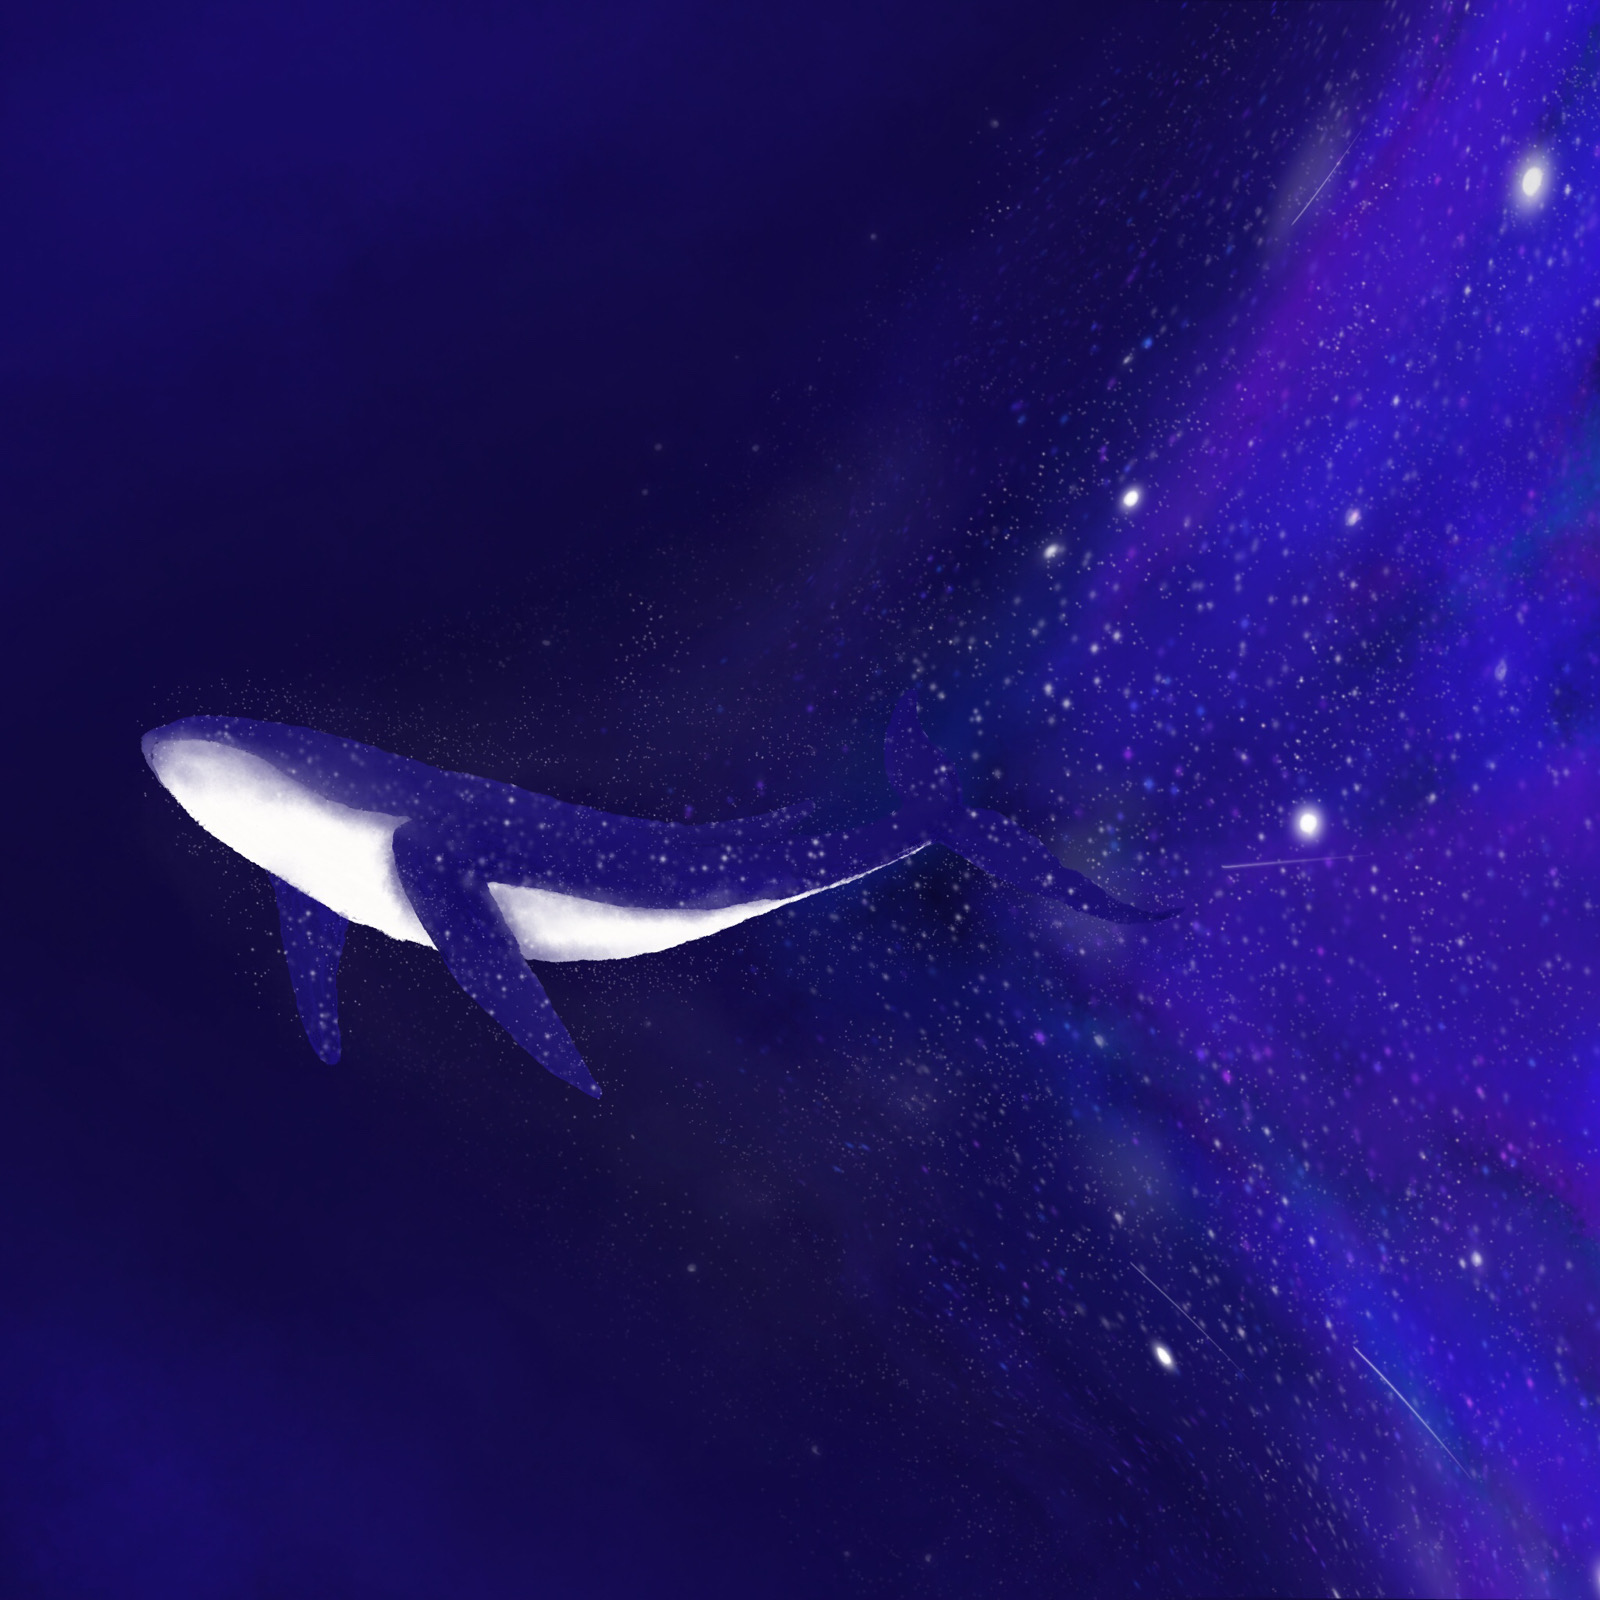 星空鲸鱼 - 堆糖,美图壁纸兴趣社区